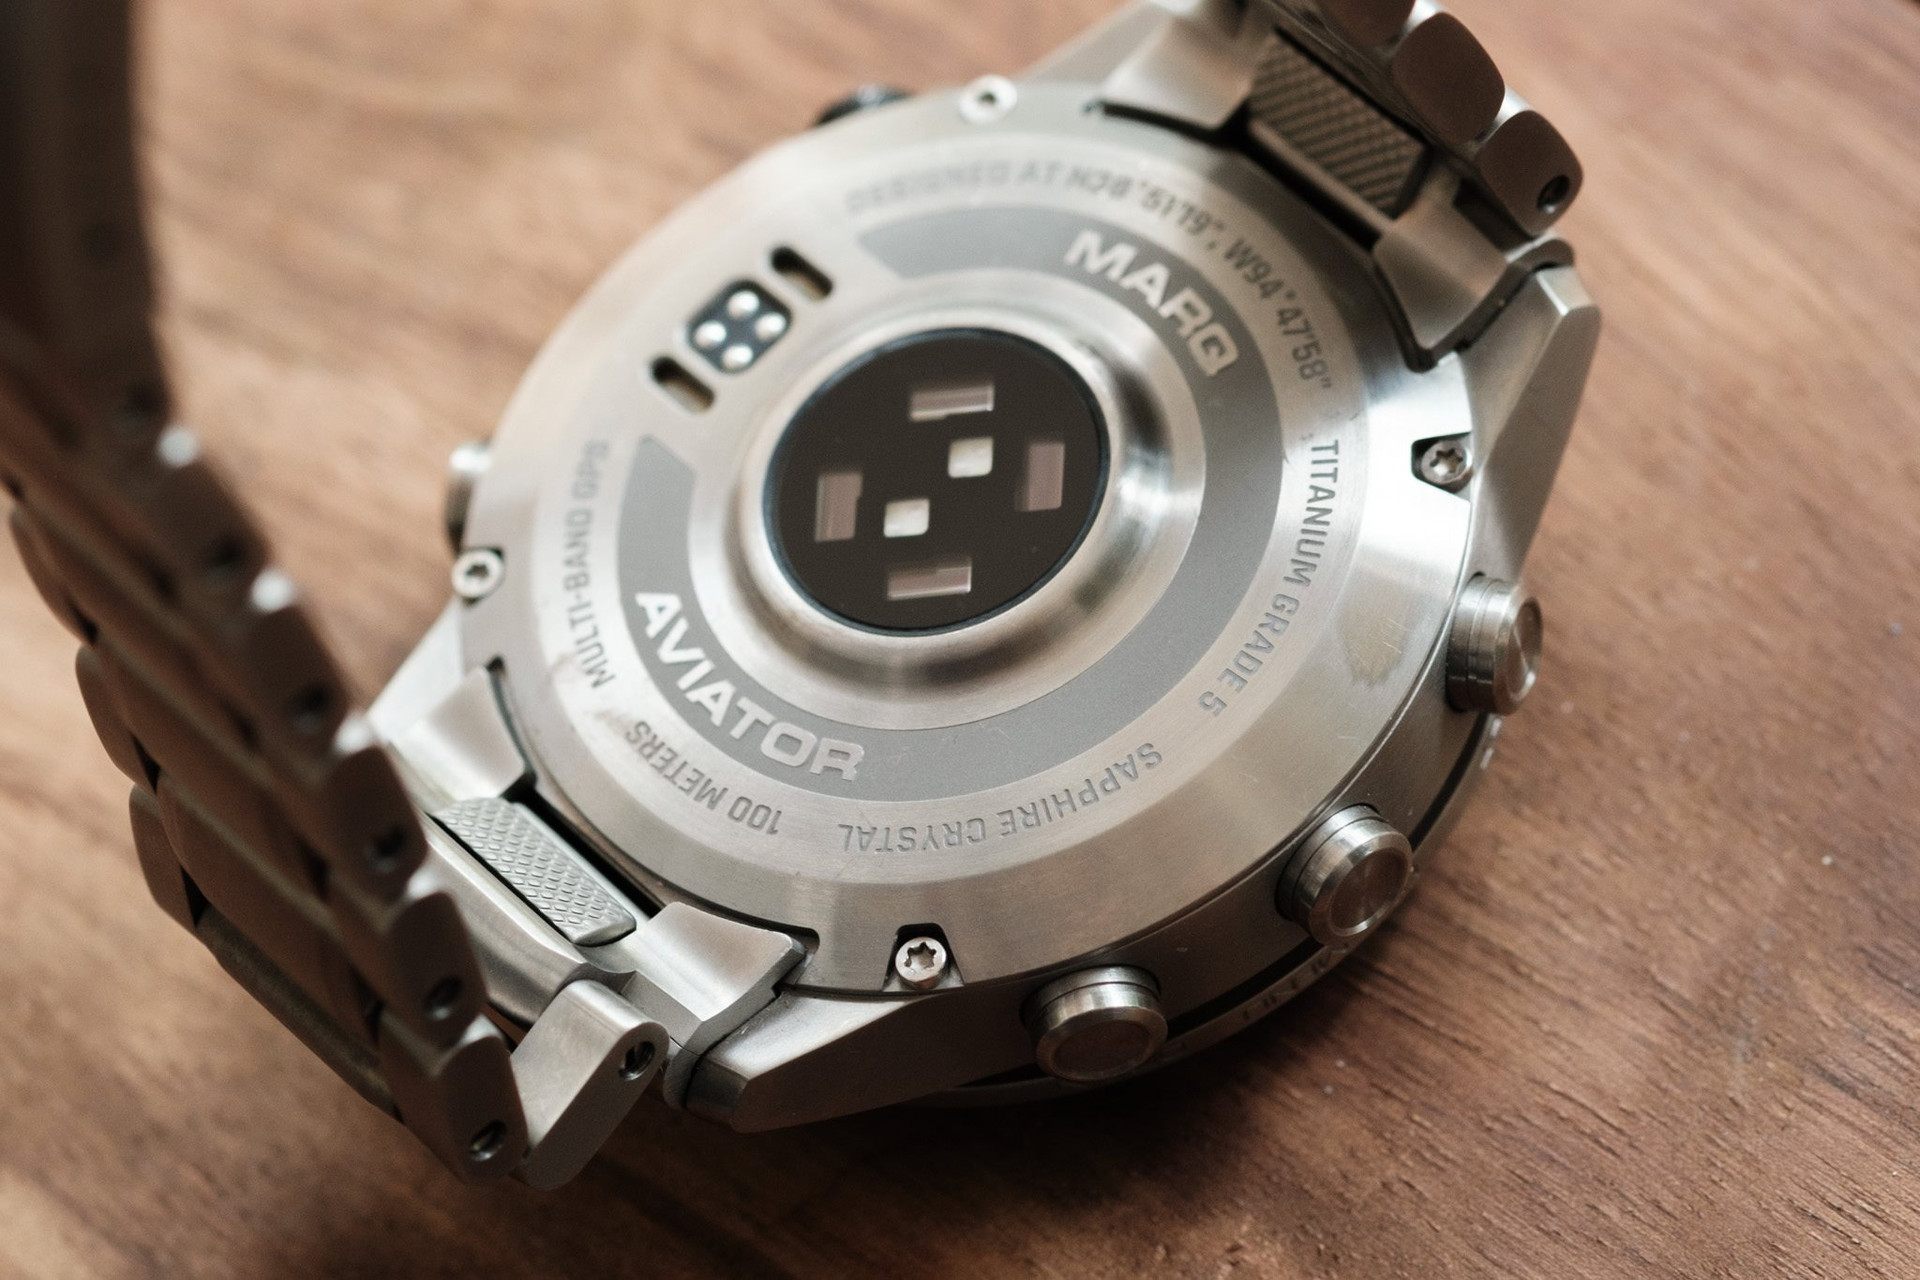 Mẫu đồng hồ Garmin có giá hơn 60 triệu đồng, không dành cho số đông - Ảnh 5.